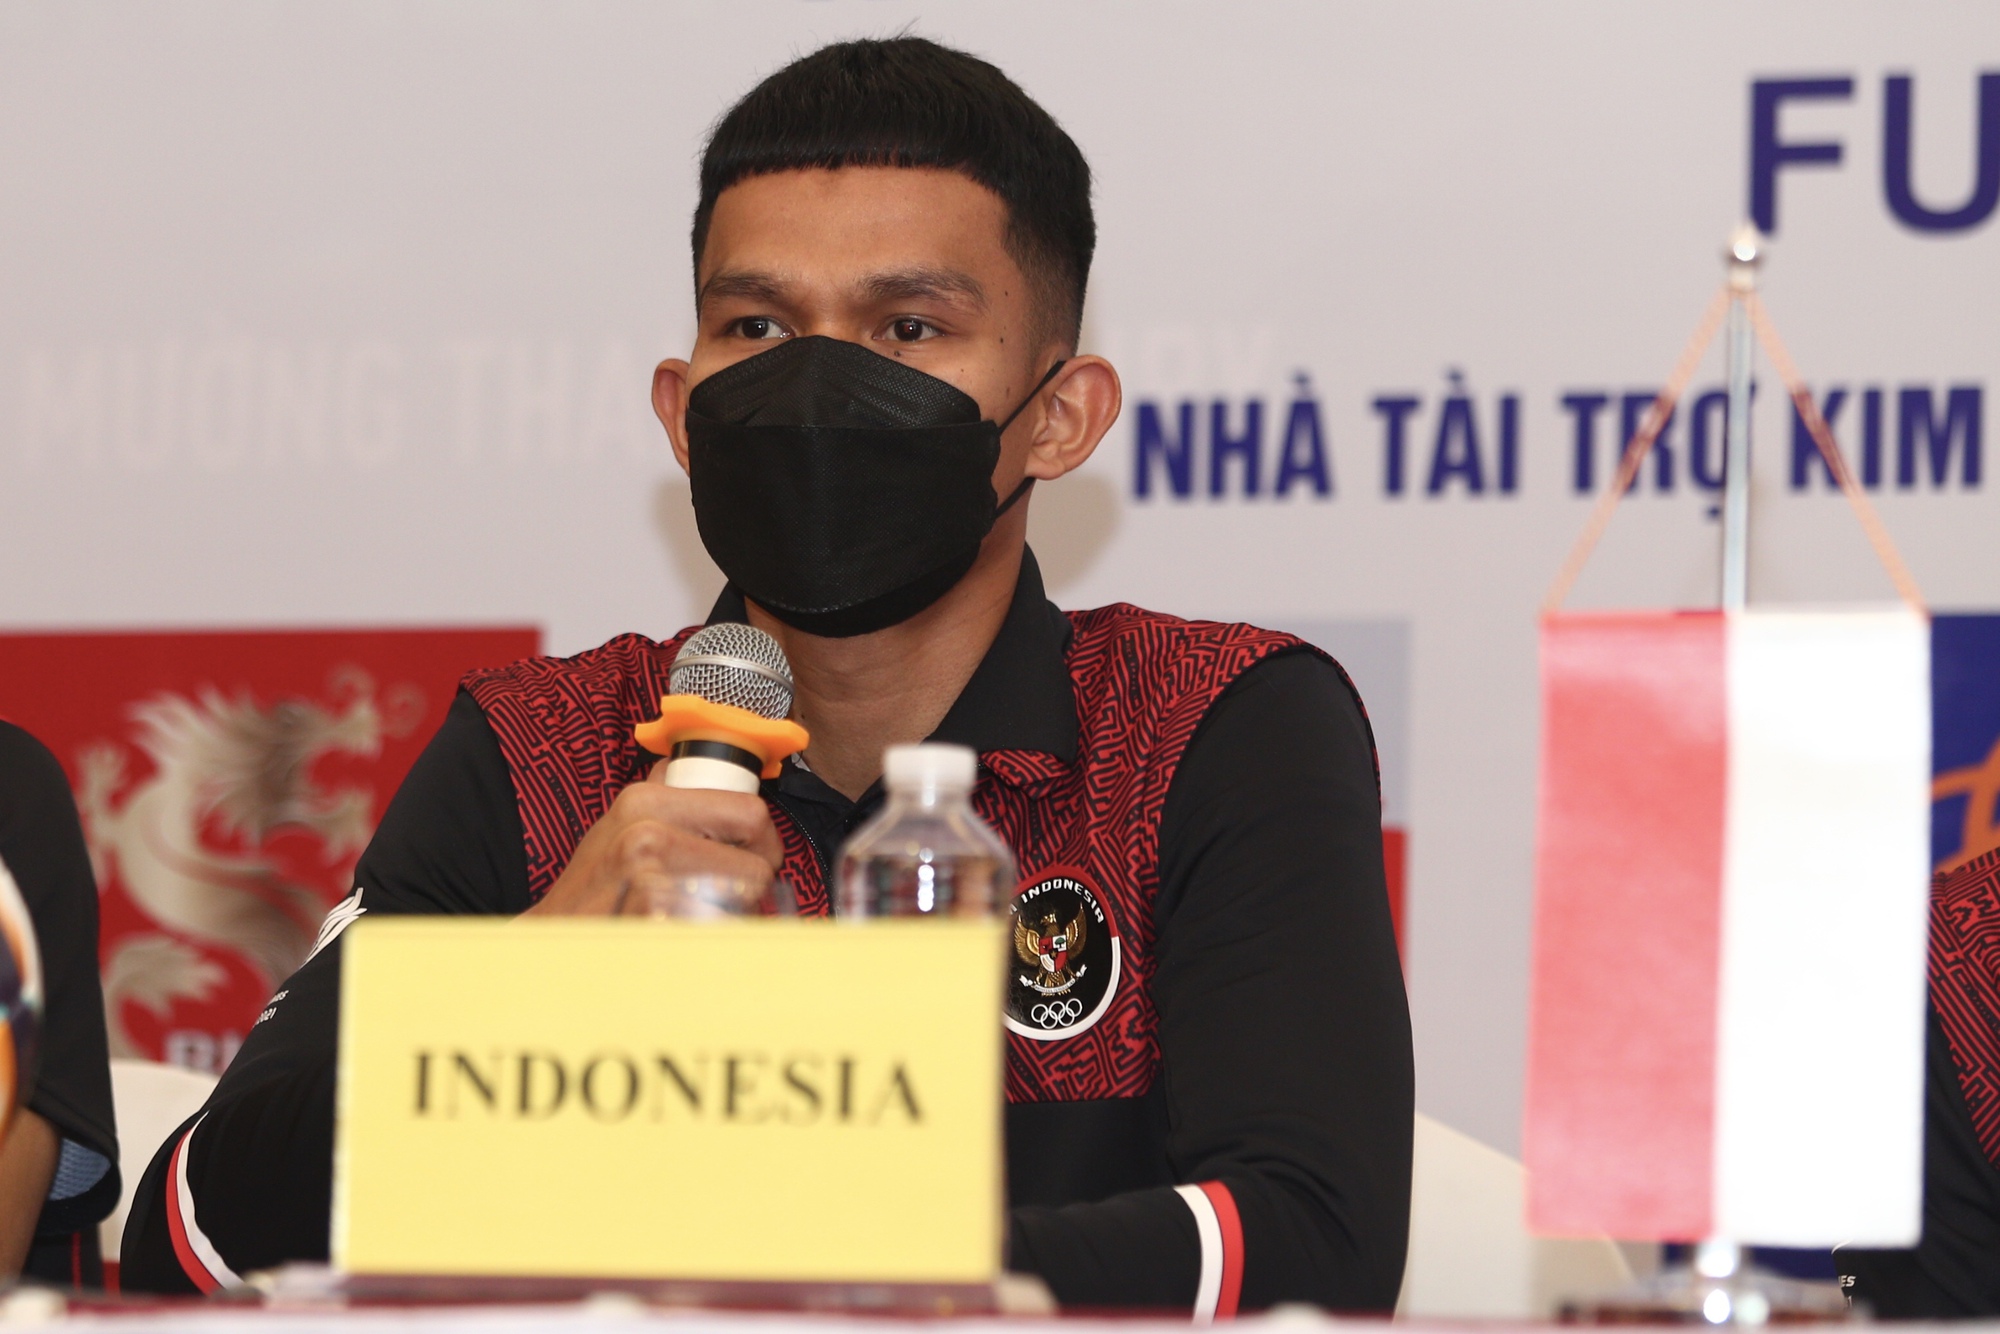 Futsal Indonesia đặc mục tiêu HCV tại SEA Games 31 - Ảnh 2.